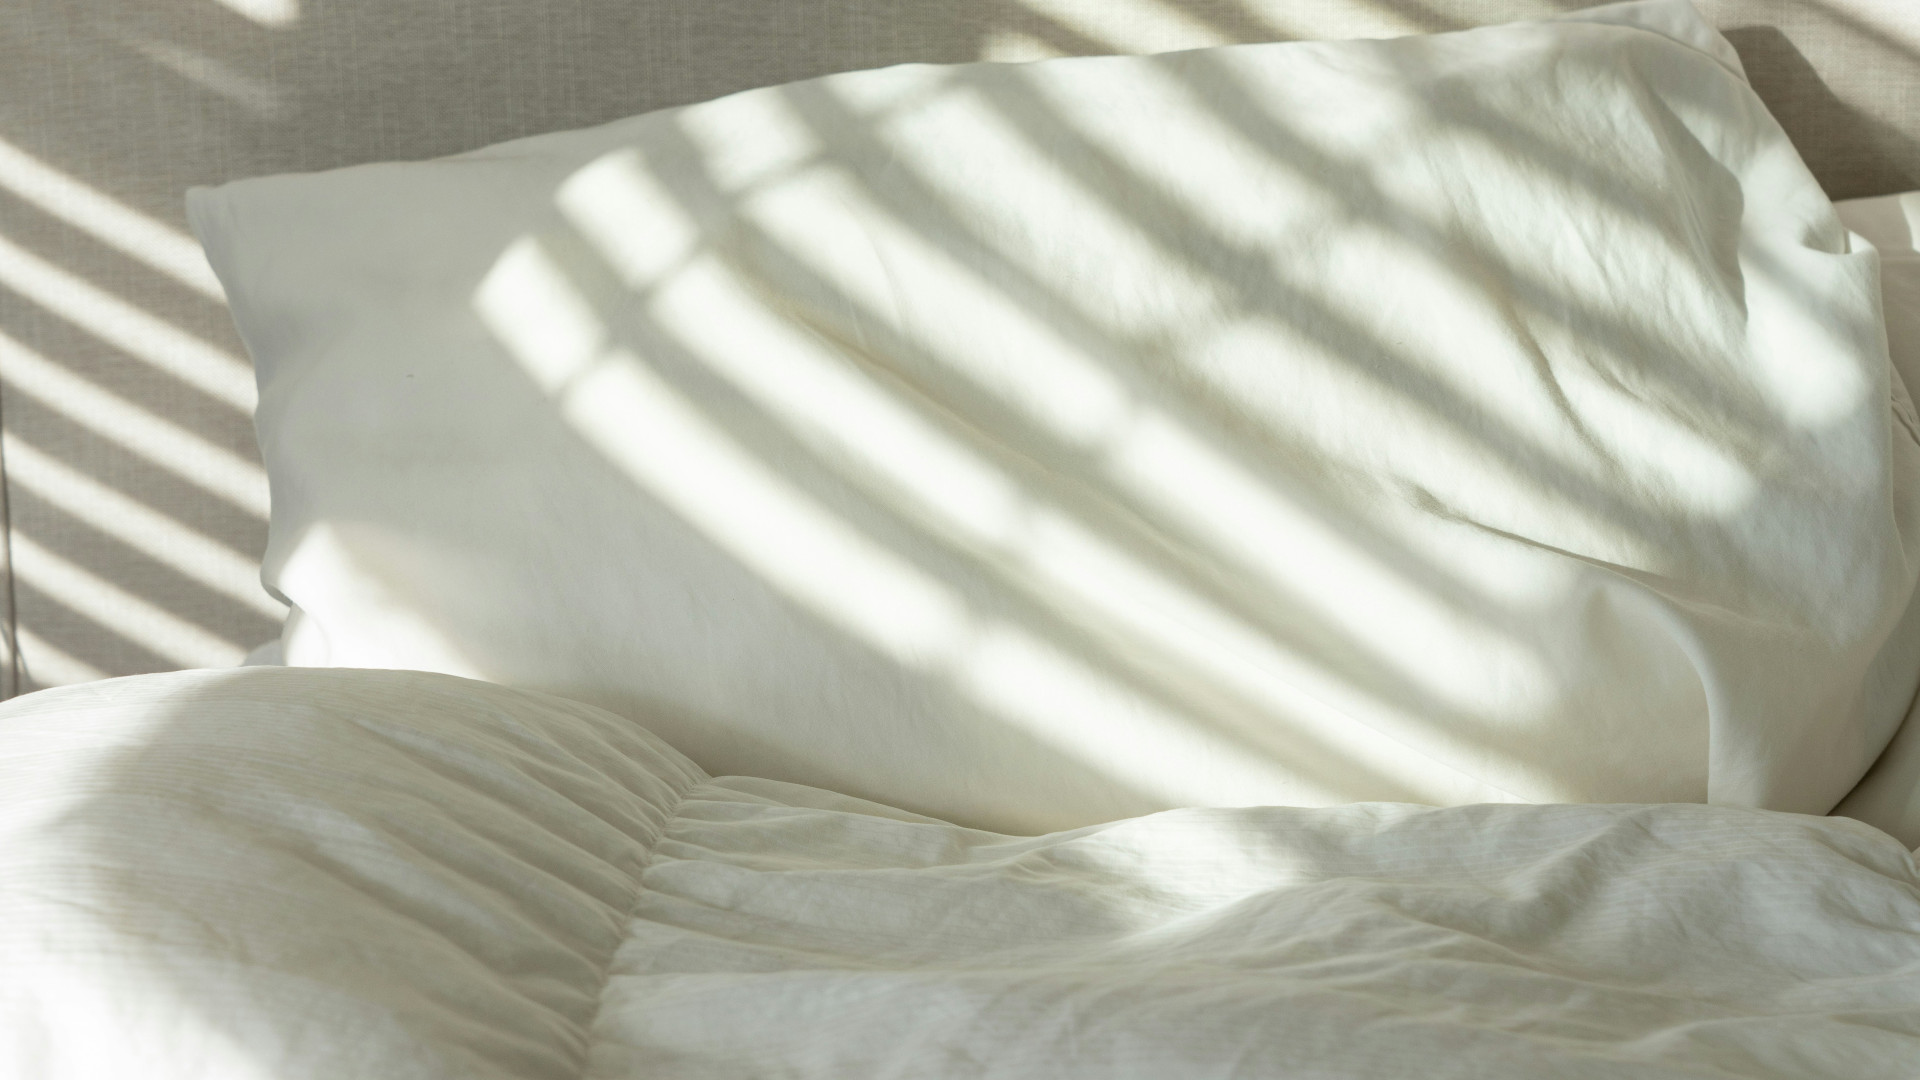 Quel est le rôle des professionnels pour l'éradication des punaises de lit